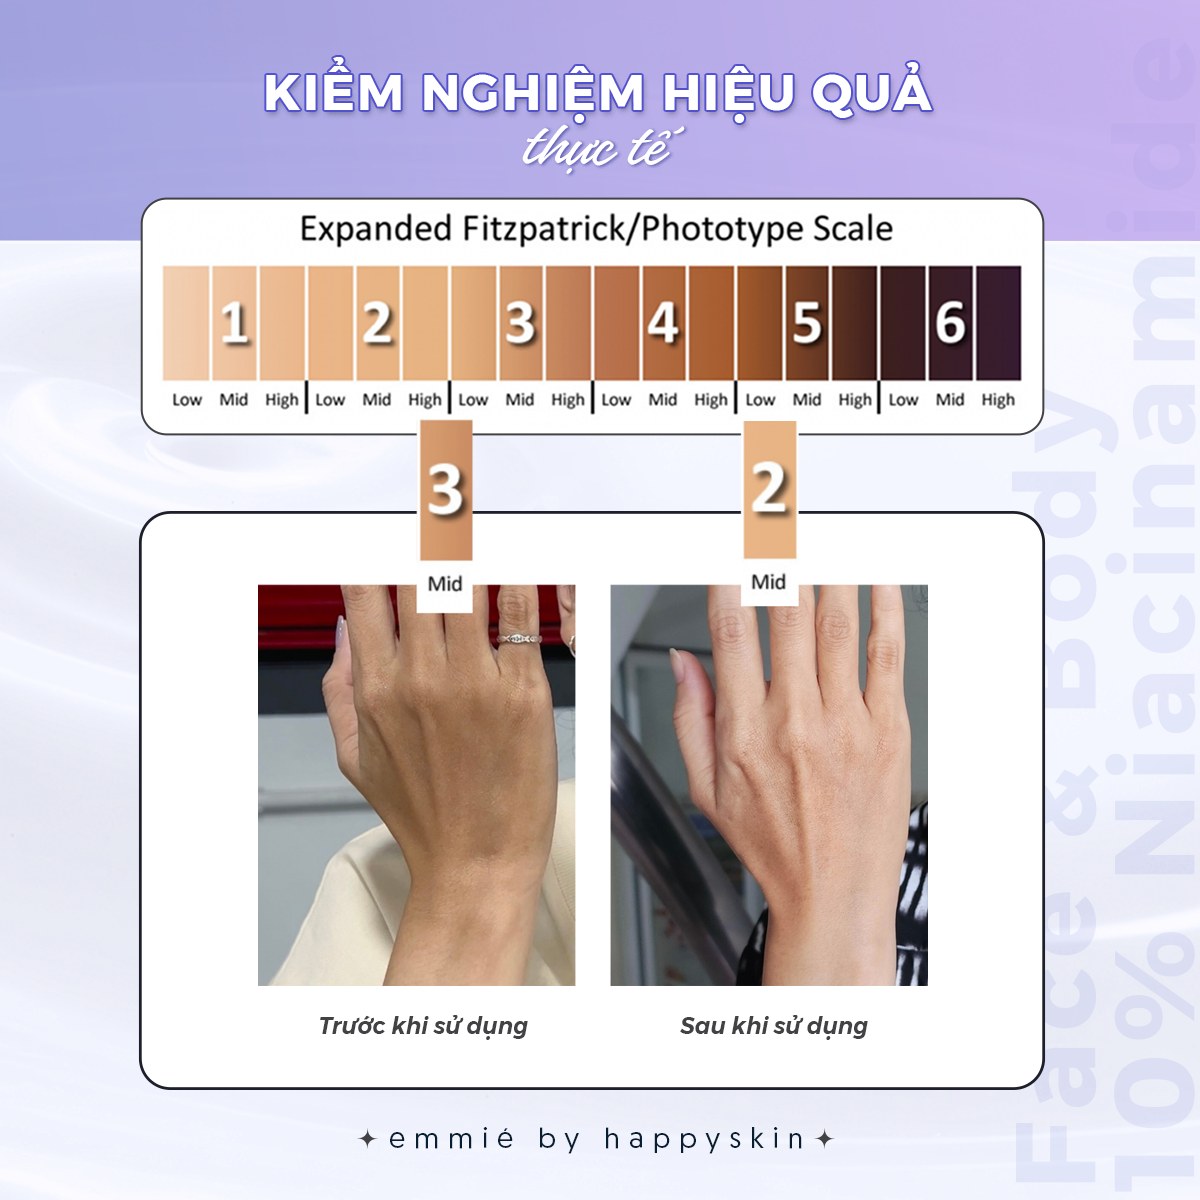 Kết quả kiểm nghiệm thực tế Kem Dưỡng Trắng Emmié Face & Body Emulsion 10% Niacinamide